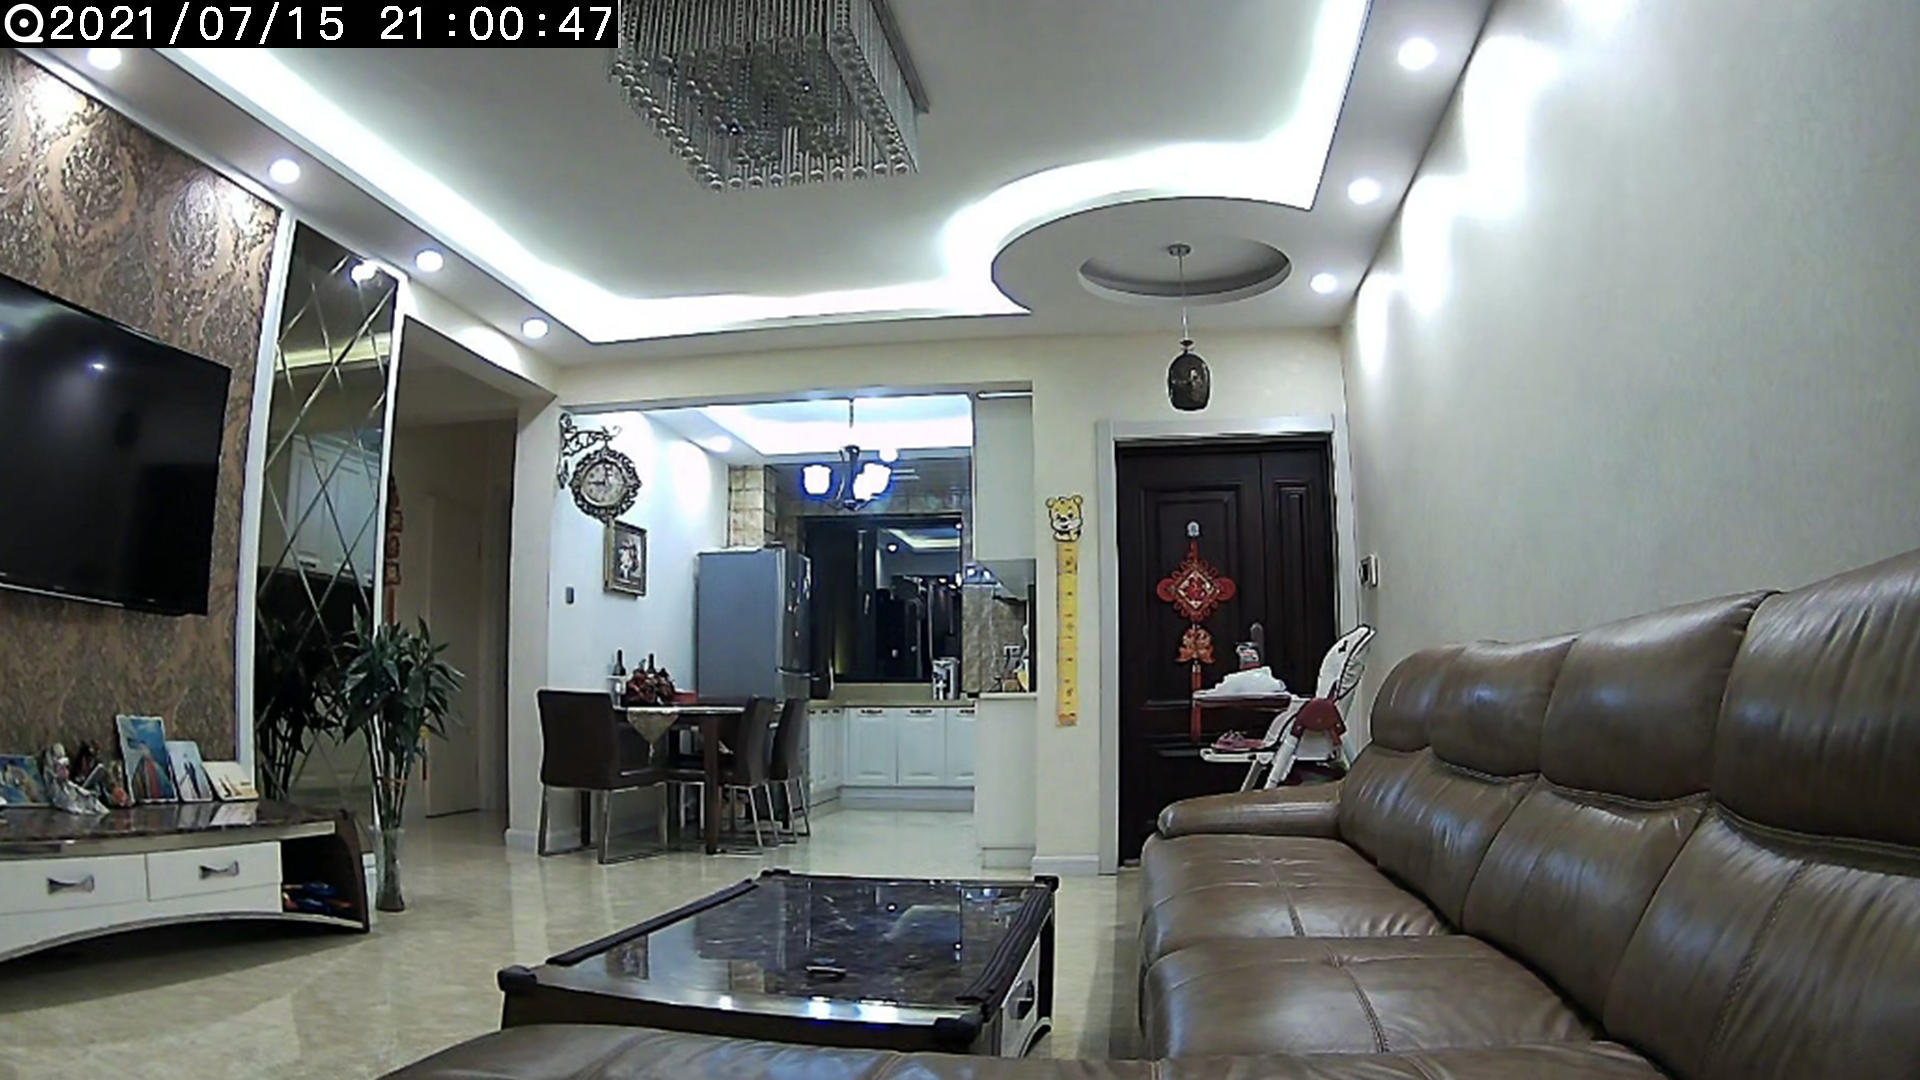 1080P画质、红外夜视，24小时看家更放心！QCY智能摄像机CC1A体验